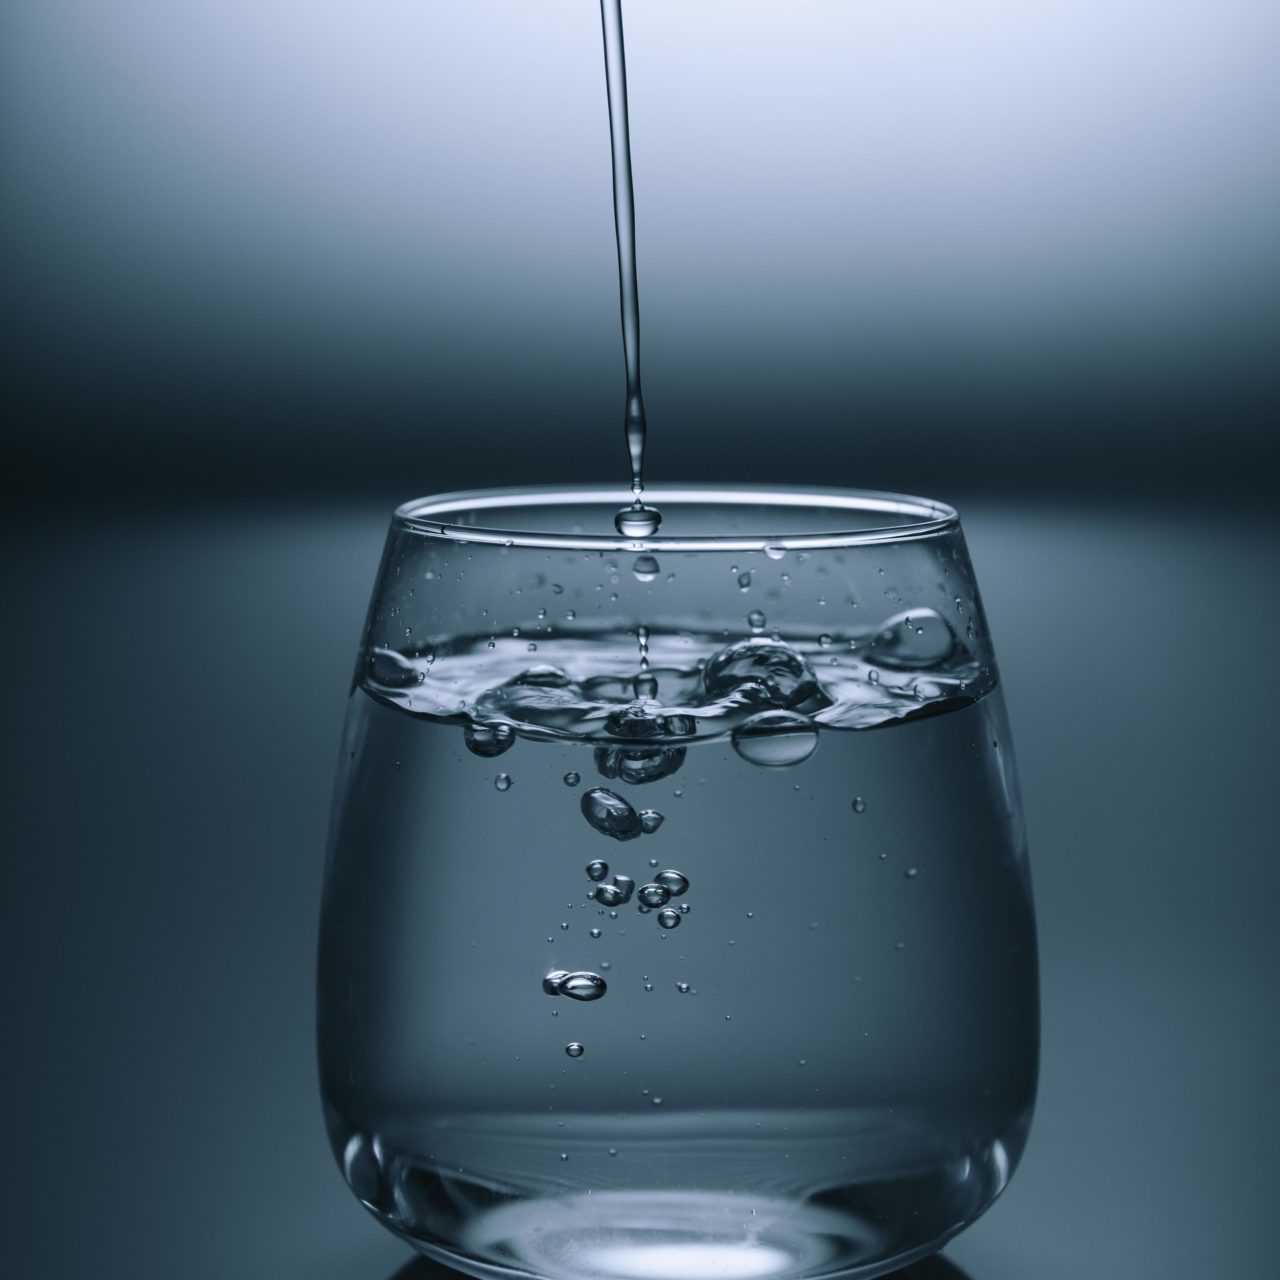 شعور الإنسان بعد الامتناع عن شرب المياه لمدة “72” ساعة